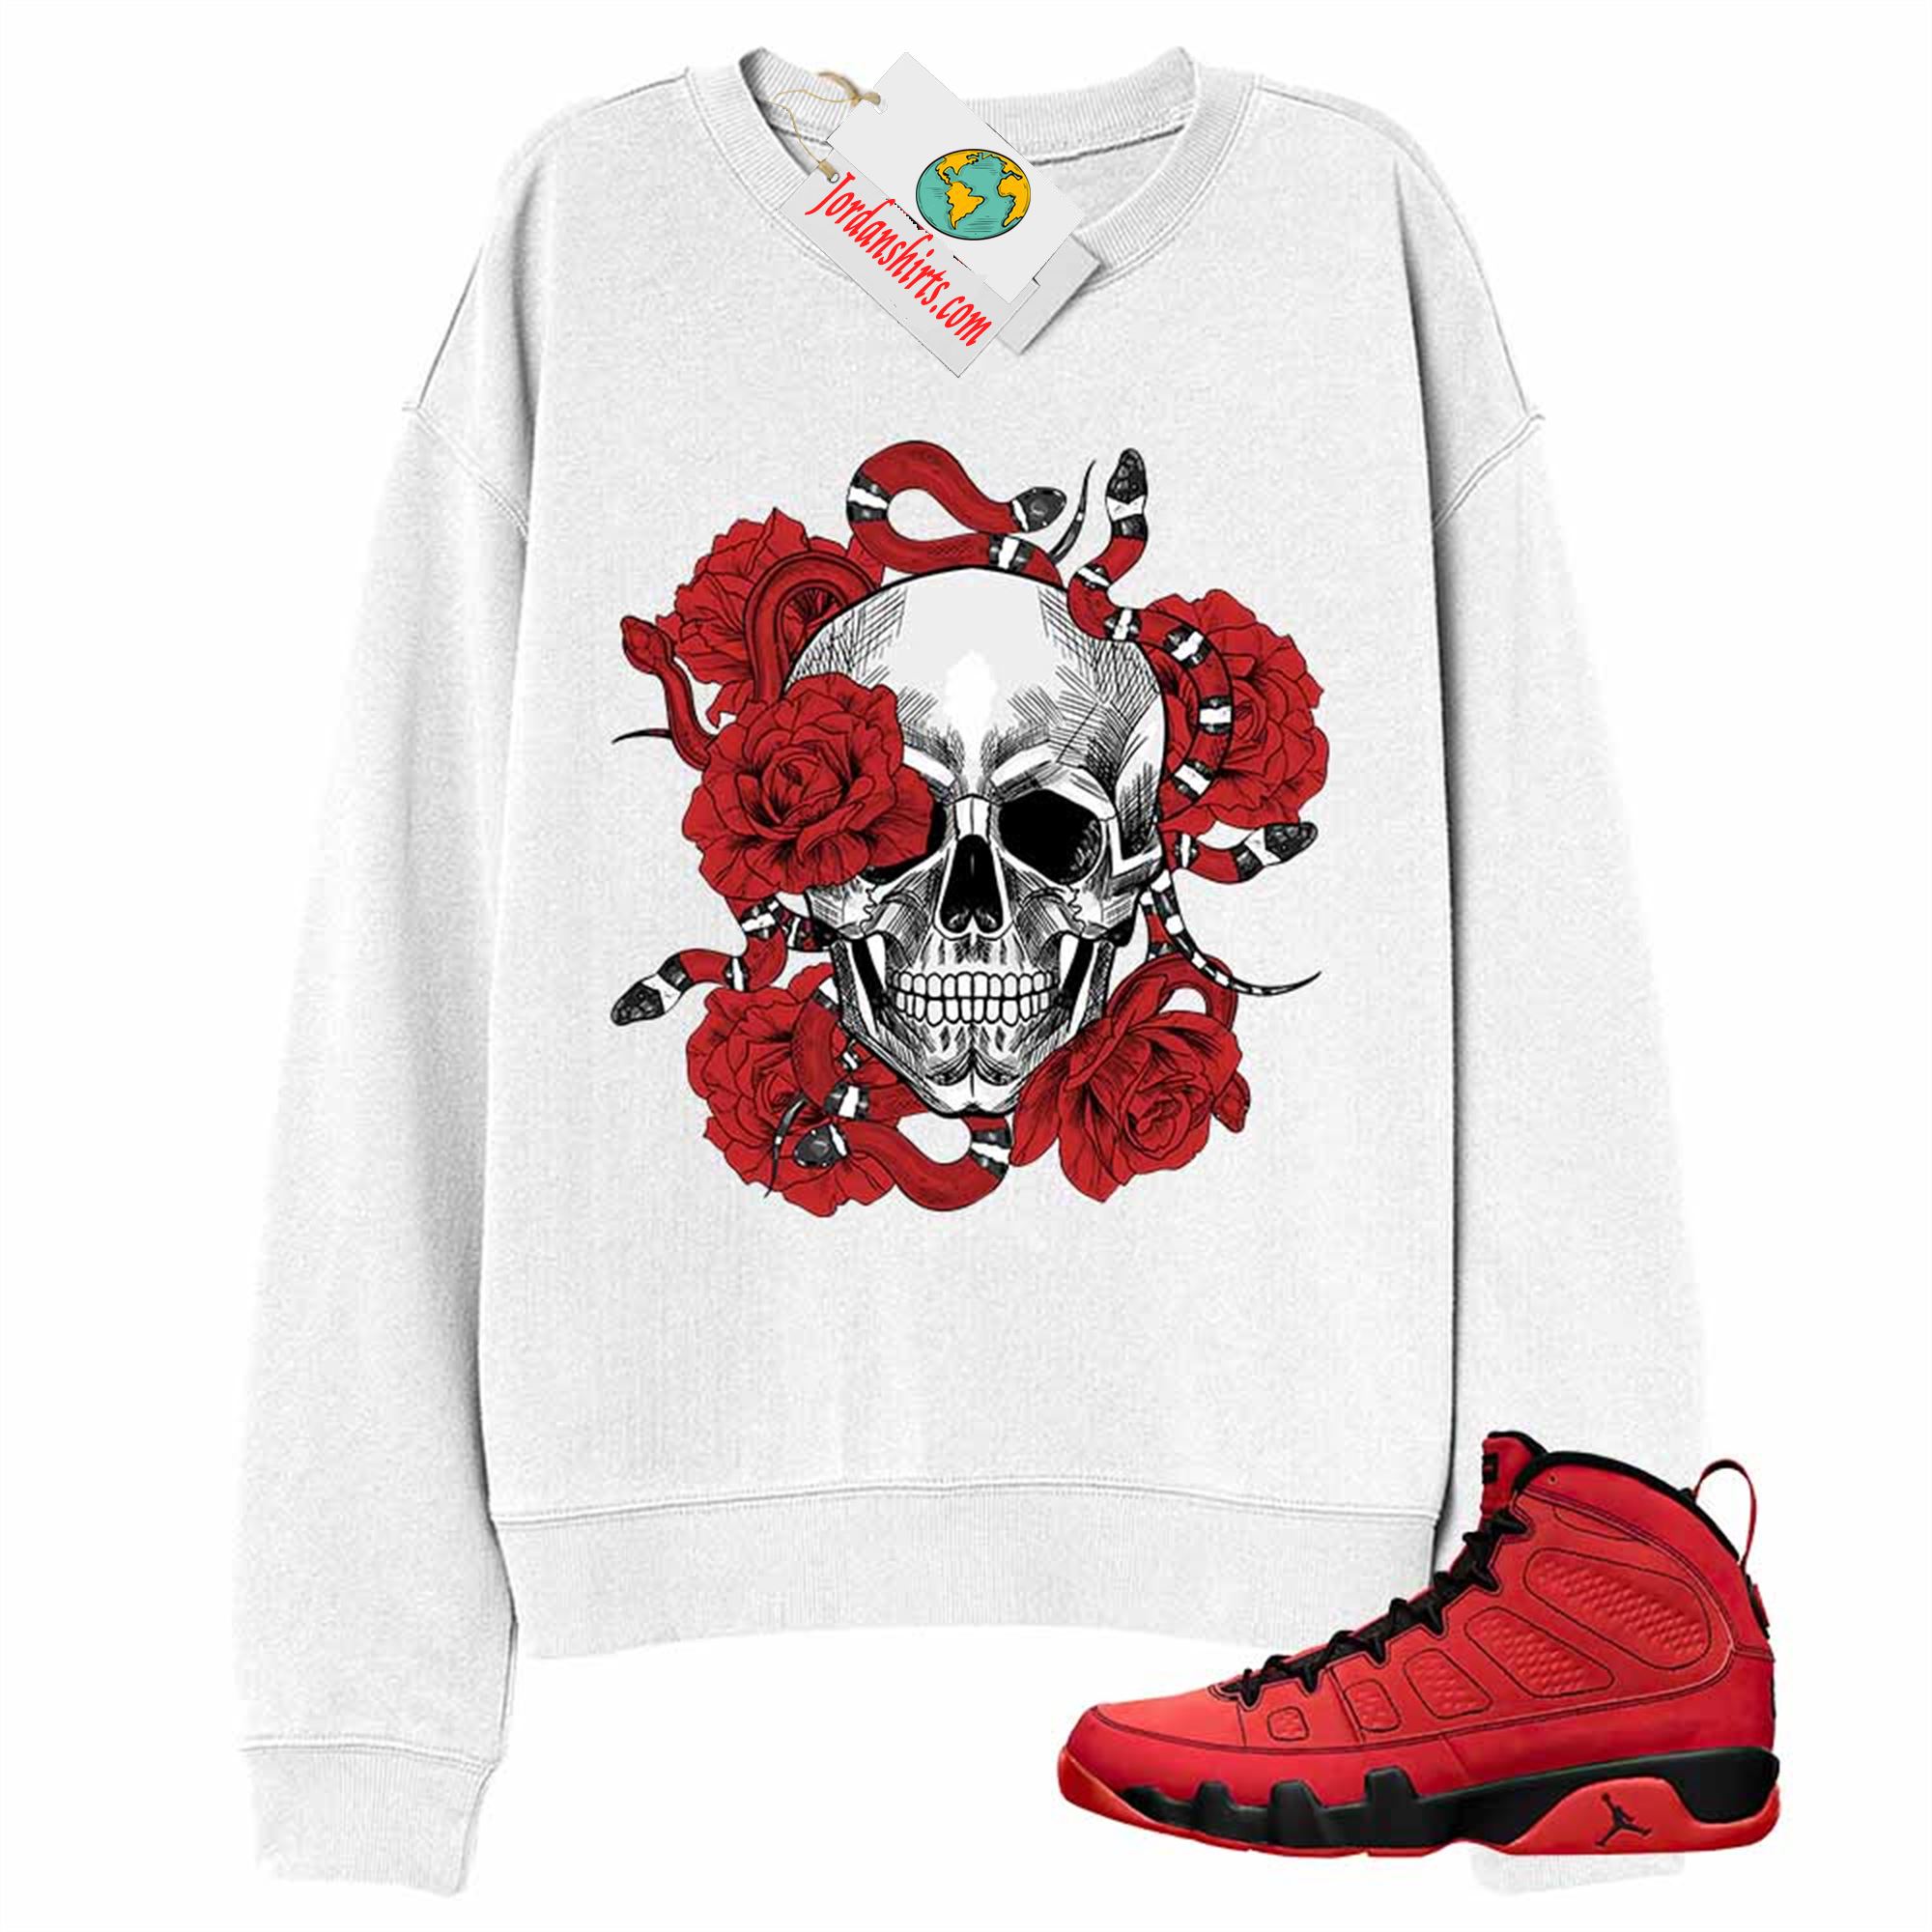 Jordan 9 Sweatshirt, Snake Skull Rose White Sweatshirt Air Jordan 9 Chile Red 9s Full Size Up To 5xl